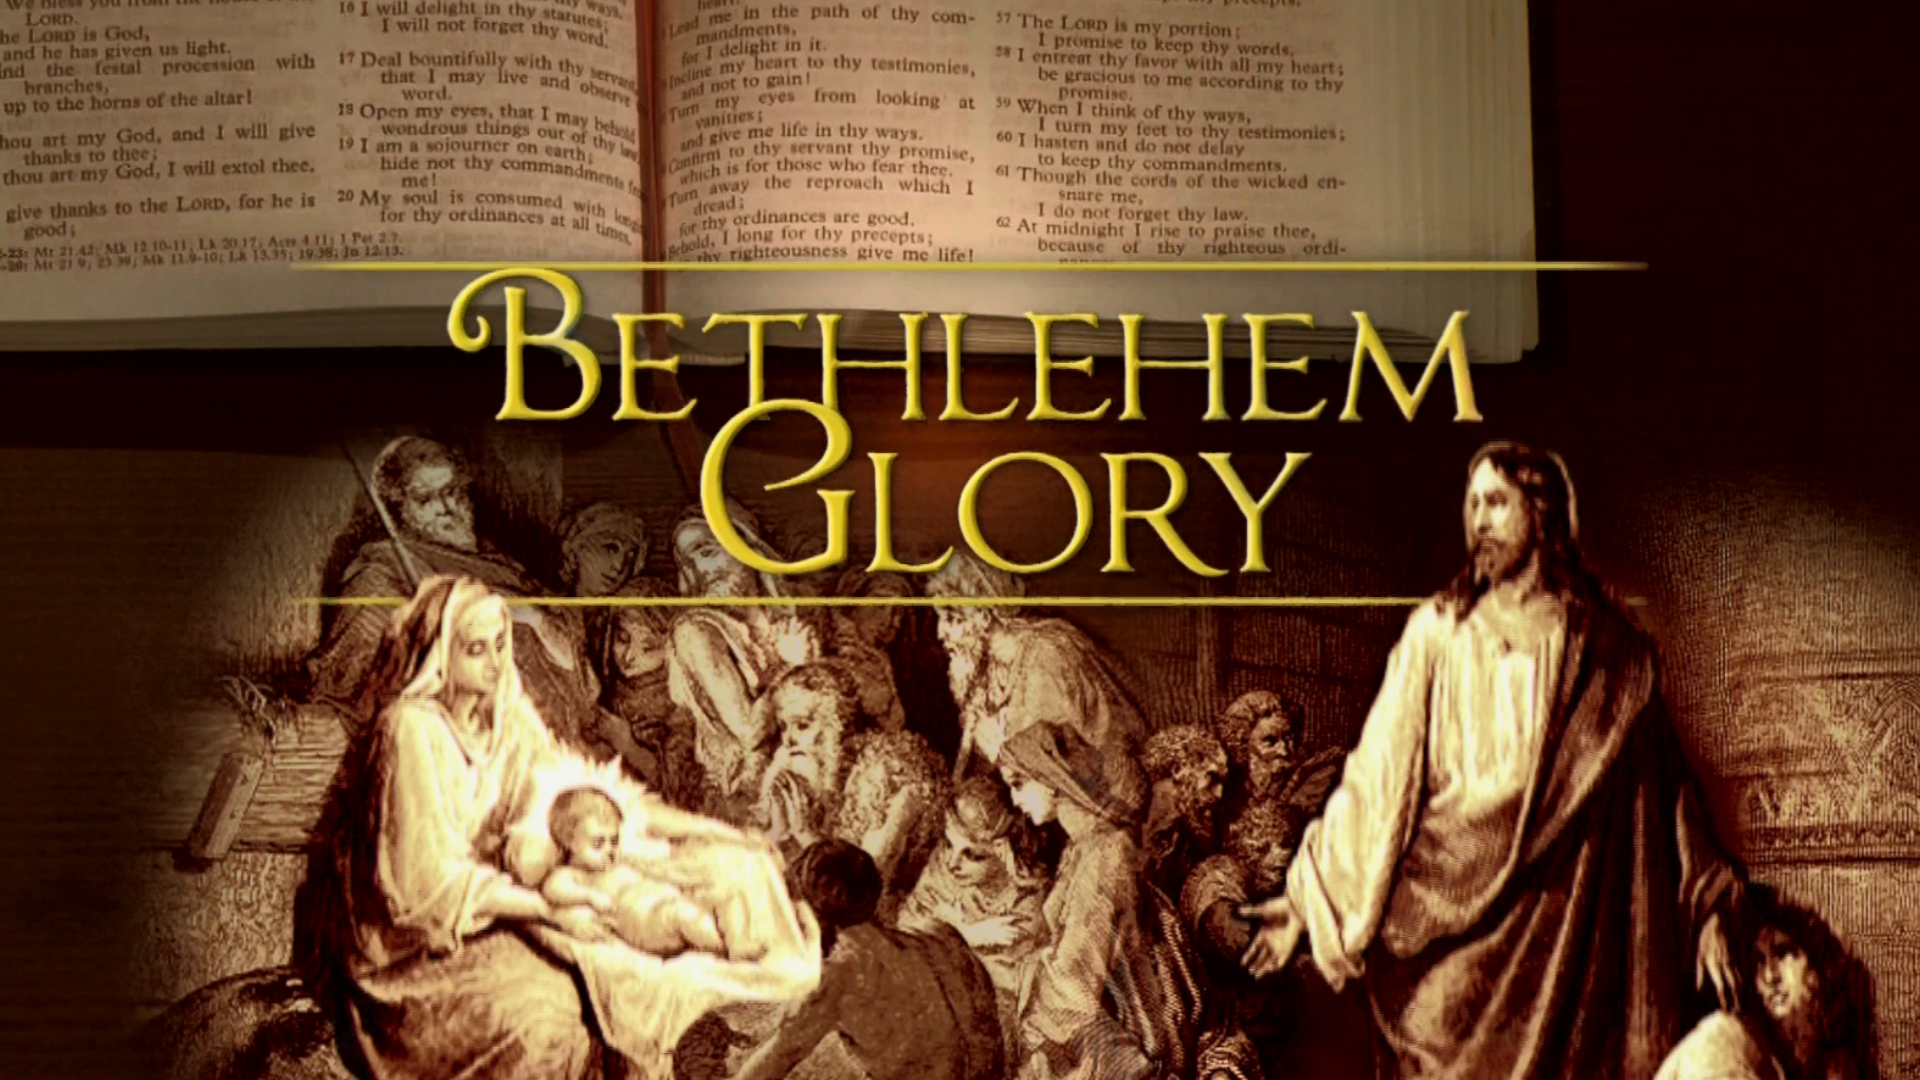 Bethlehem Glory